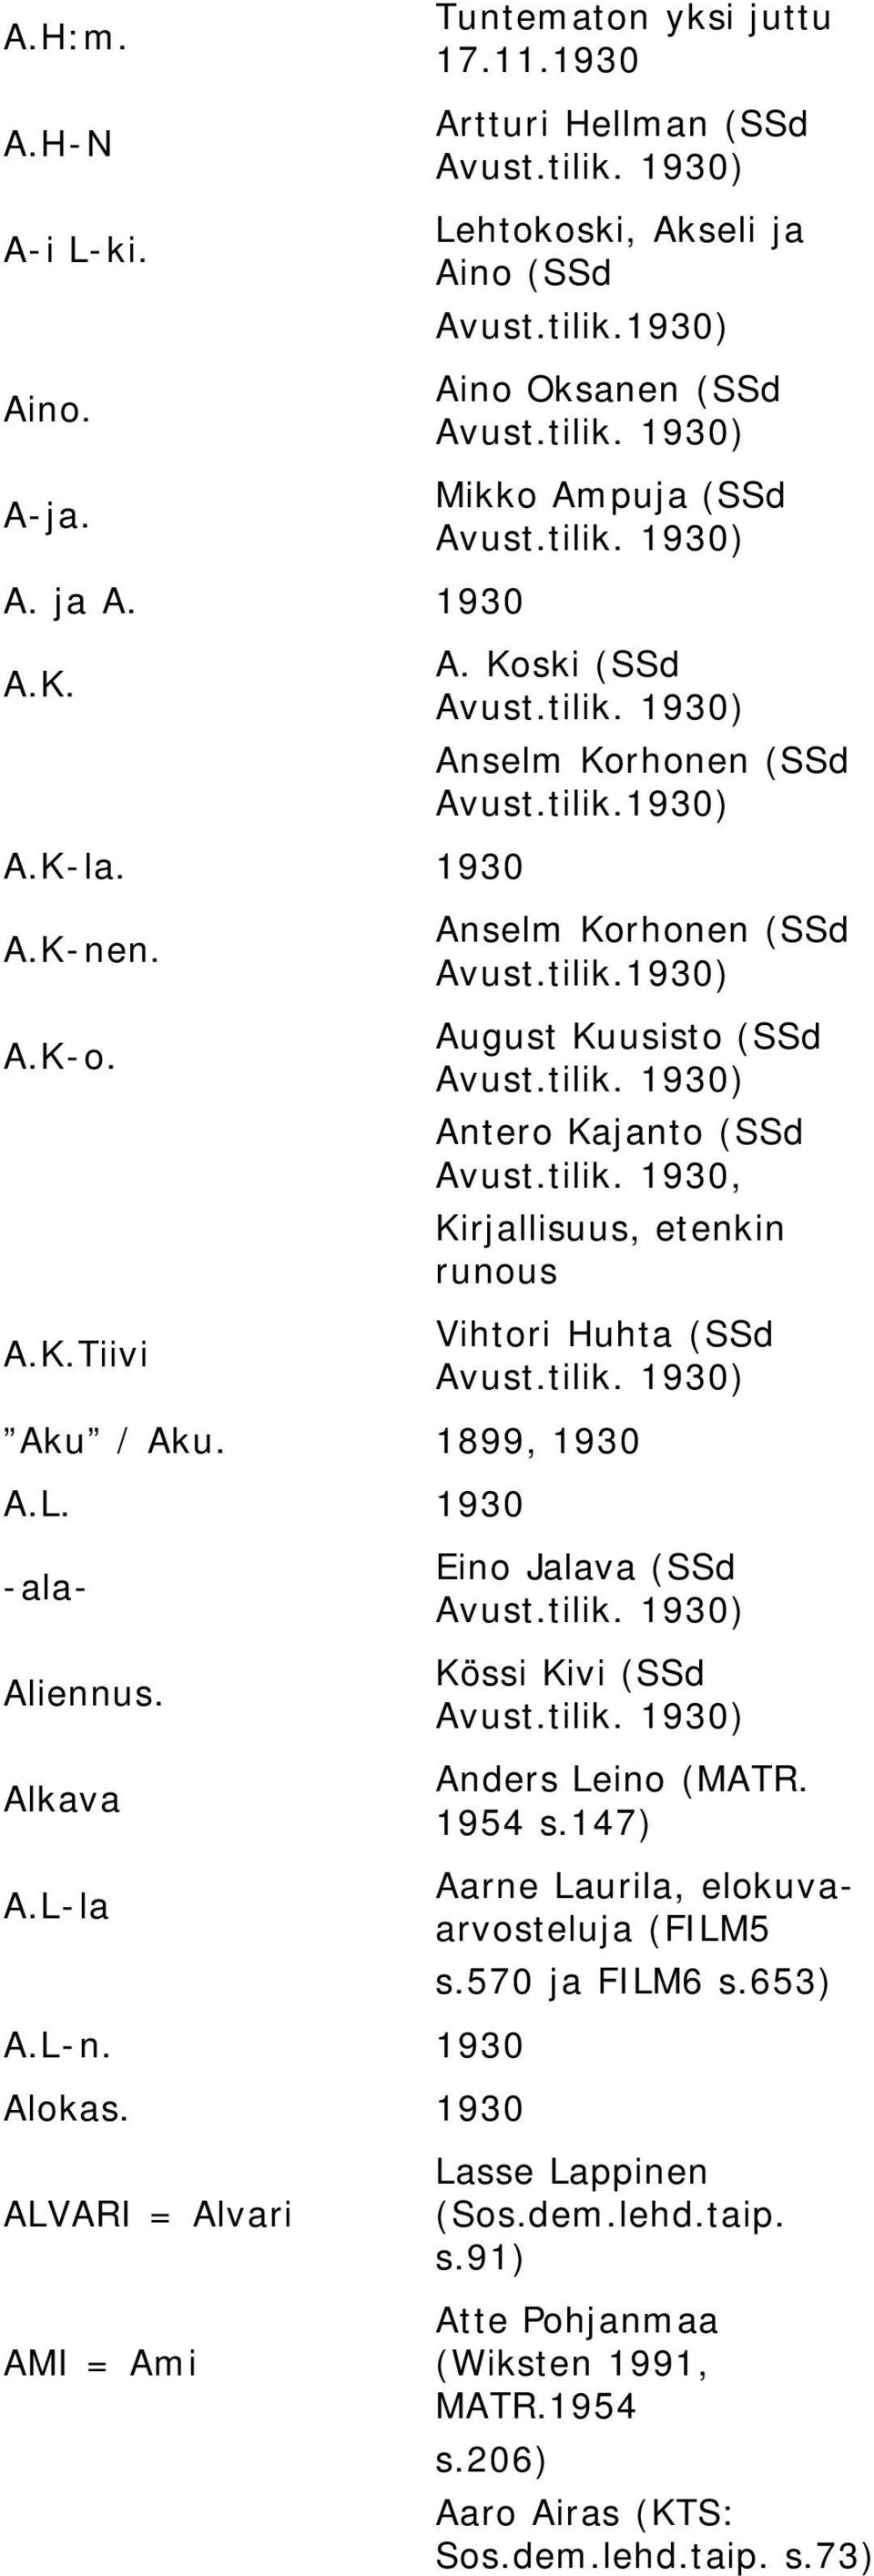 Koski (SSd Anselm Korhonen (SSd Anselm Korhonen (SSd August Kuusisto (SSd Antero Kajanto (SSd Avust.tilik. 1930, Kirjallisuus, etenkin runous Vihtori Huhta (SSd Aku / Aku. 1899, 1930 A.L.